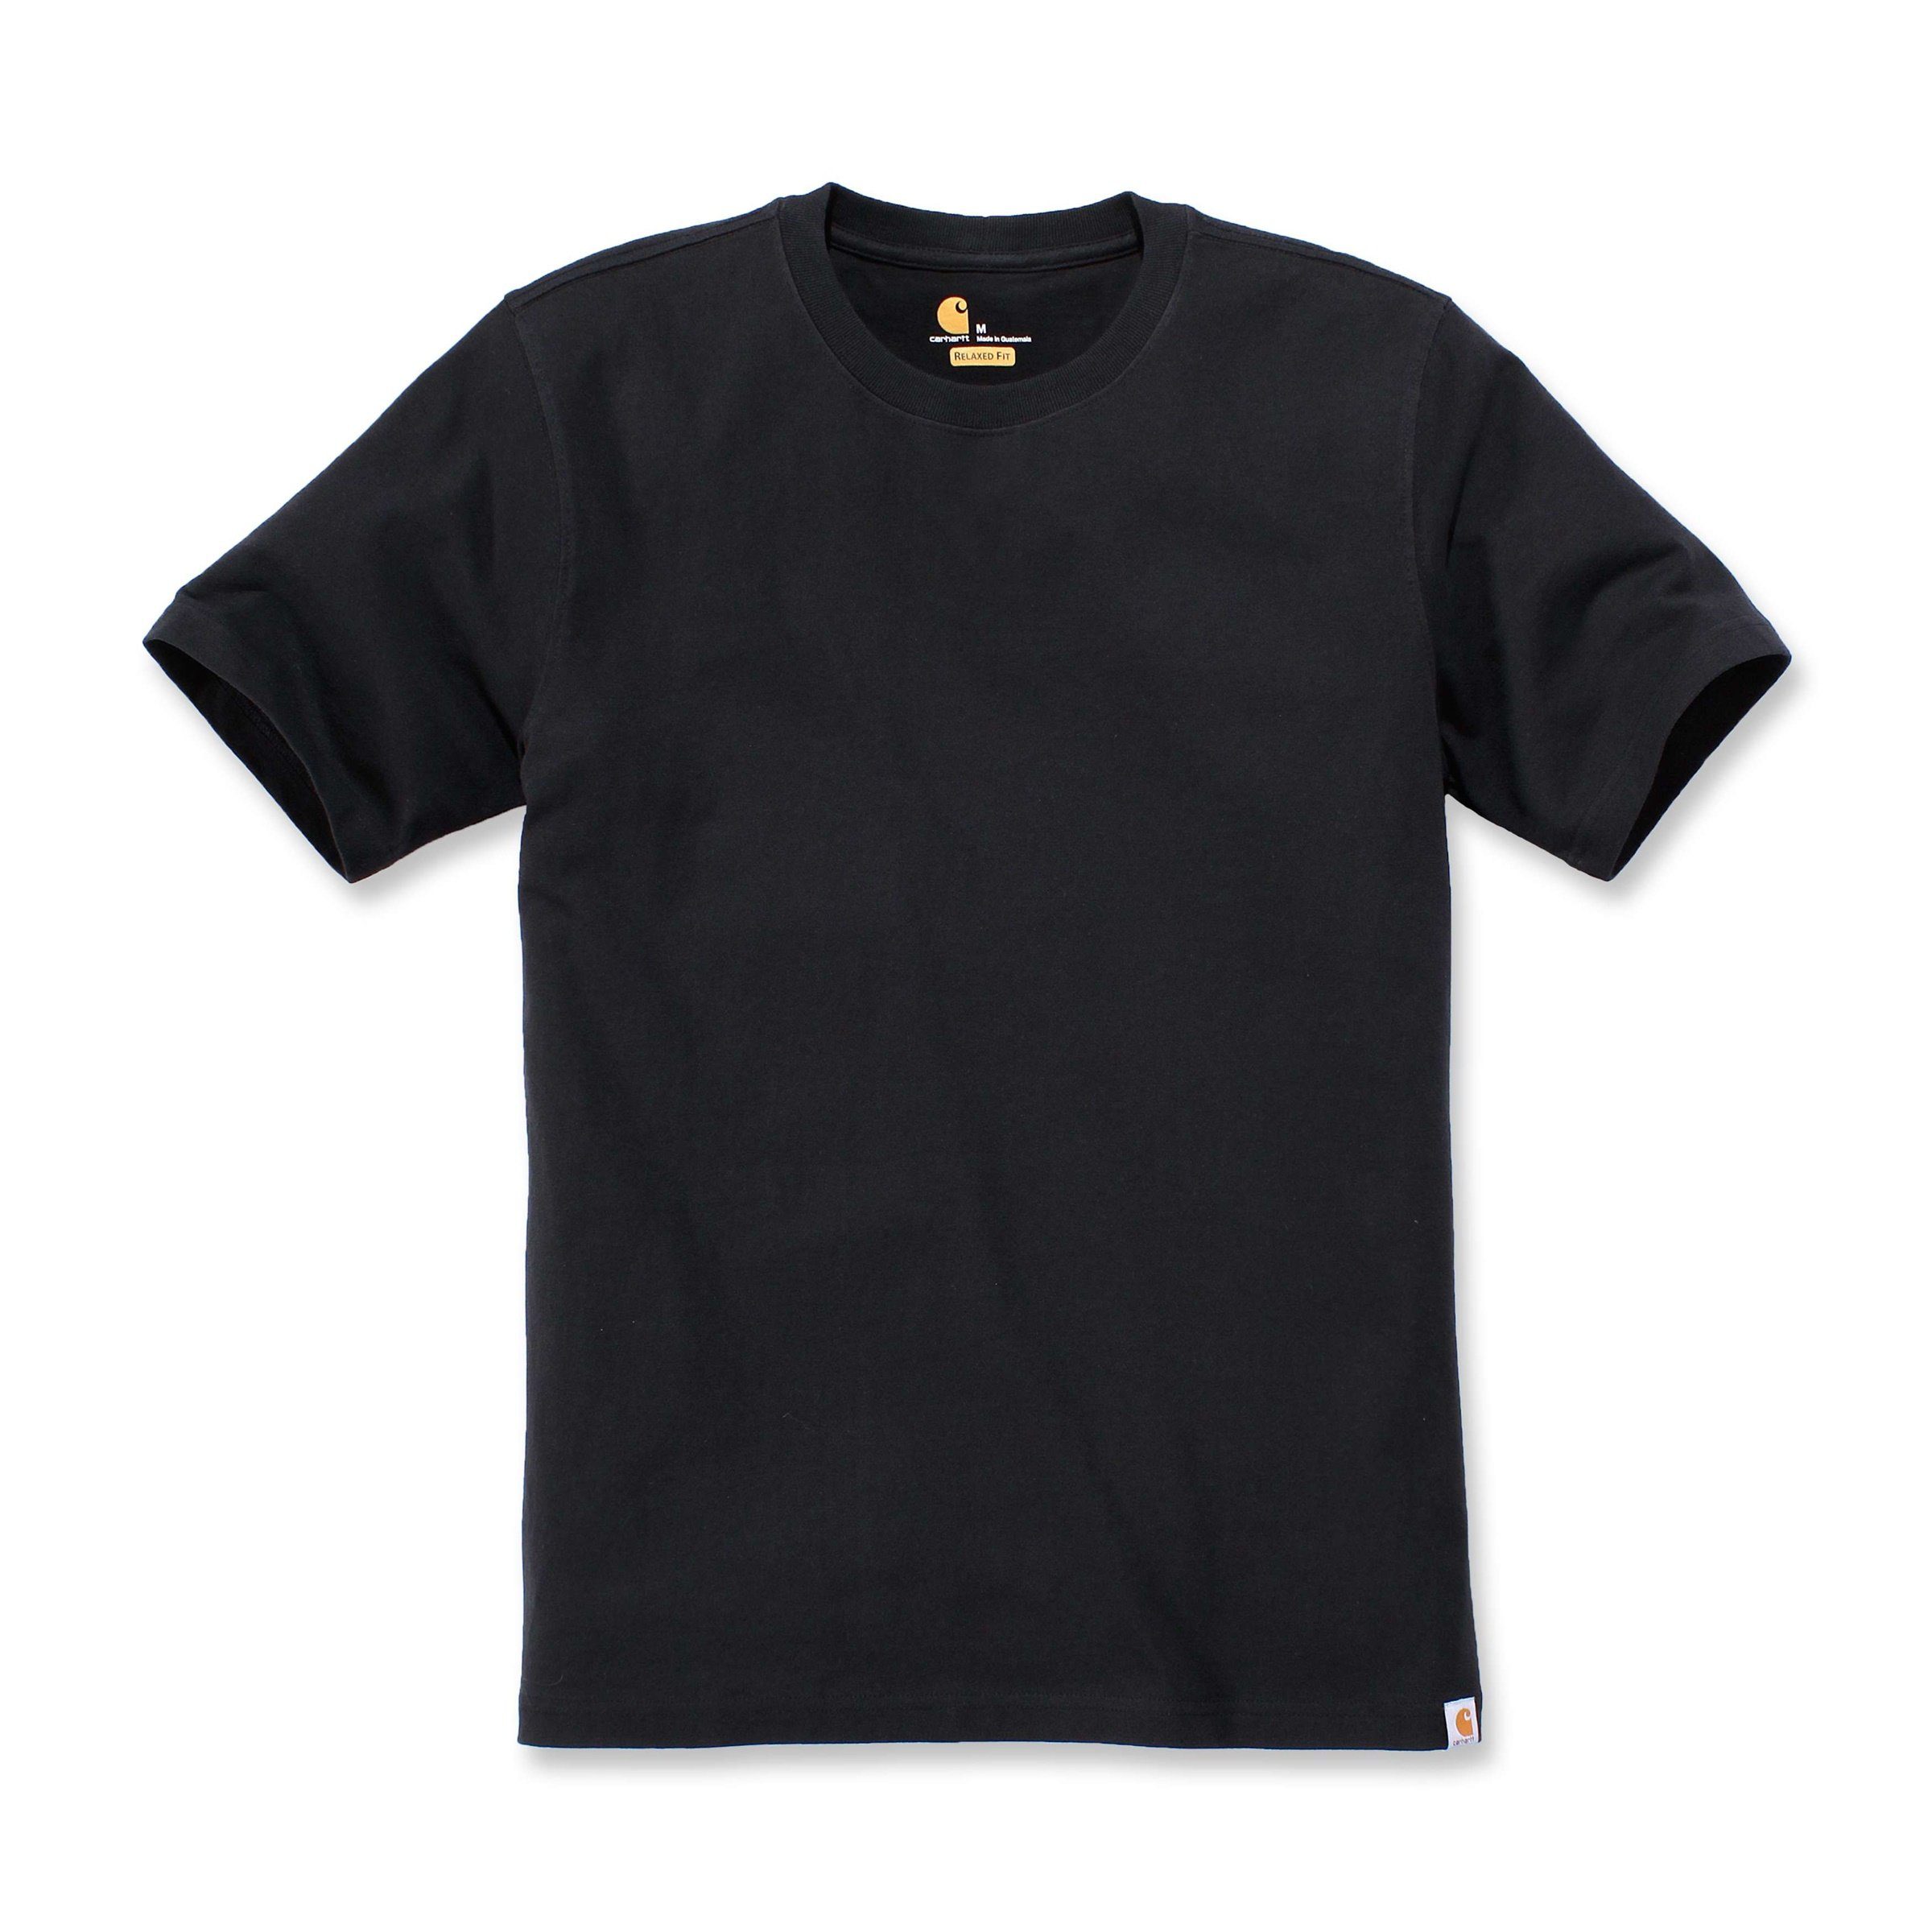 Relaxed T-Shirt black Fit Short-Sleeve Adult Herren Heavyweight Carhartt T-Shirt Carhartt